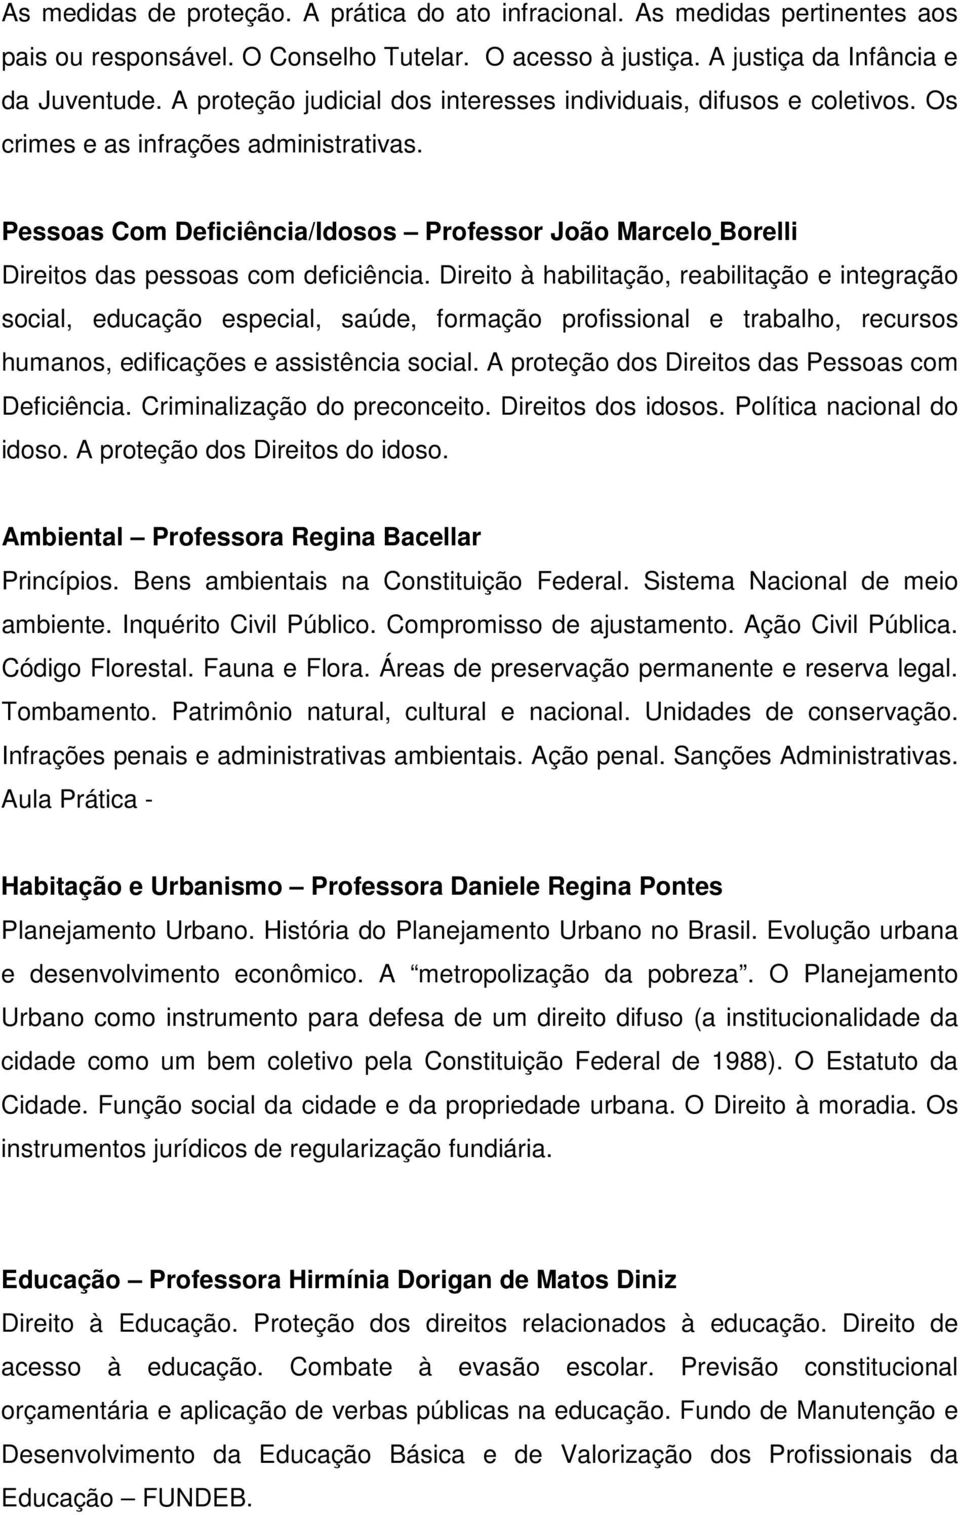 Pessoas Com Deficiência/Idosos Professor João Marcelo Borelli Direitos das pessoas com deficiência.